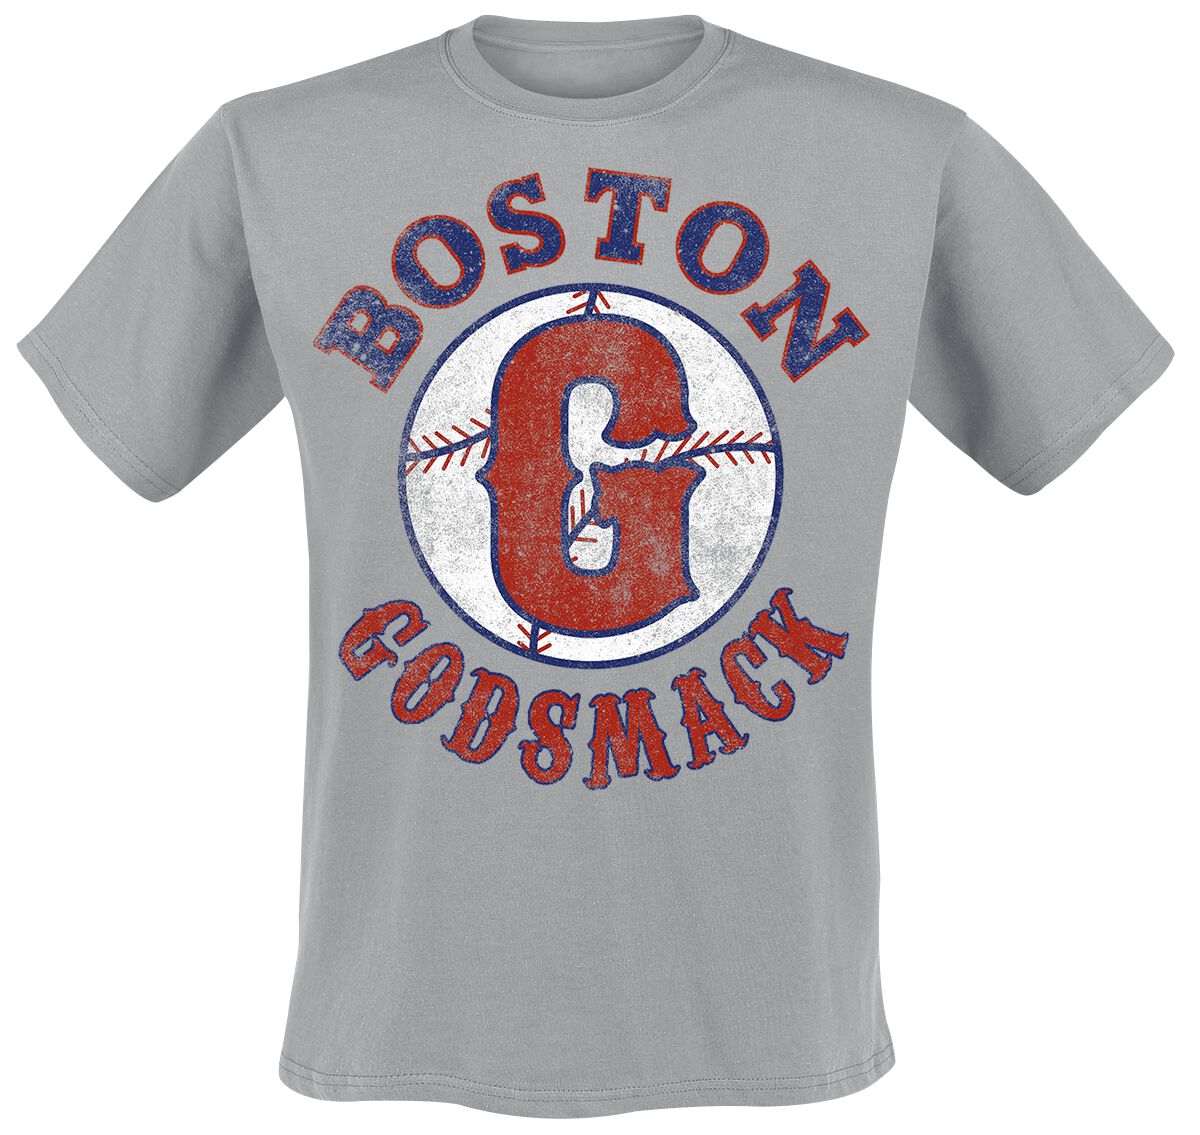 Godsmack T-Shirt - Boston - S bis M - für Männer - Größe S - grau  - Lizenziertes Merchandise!